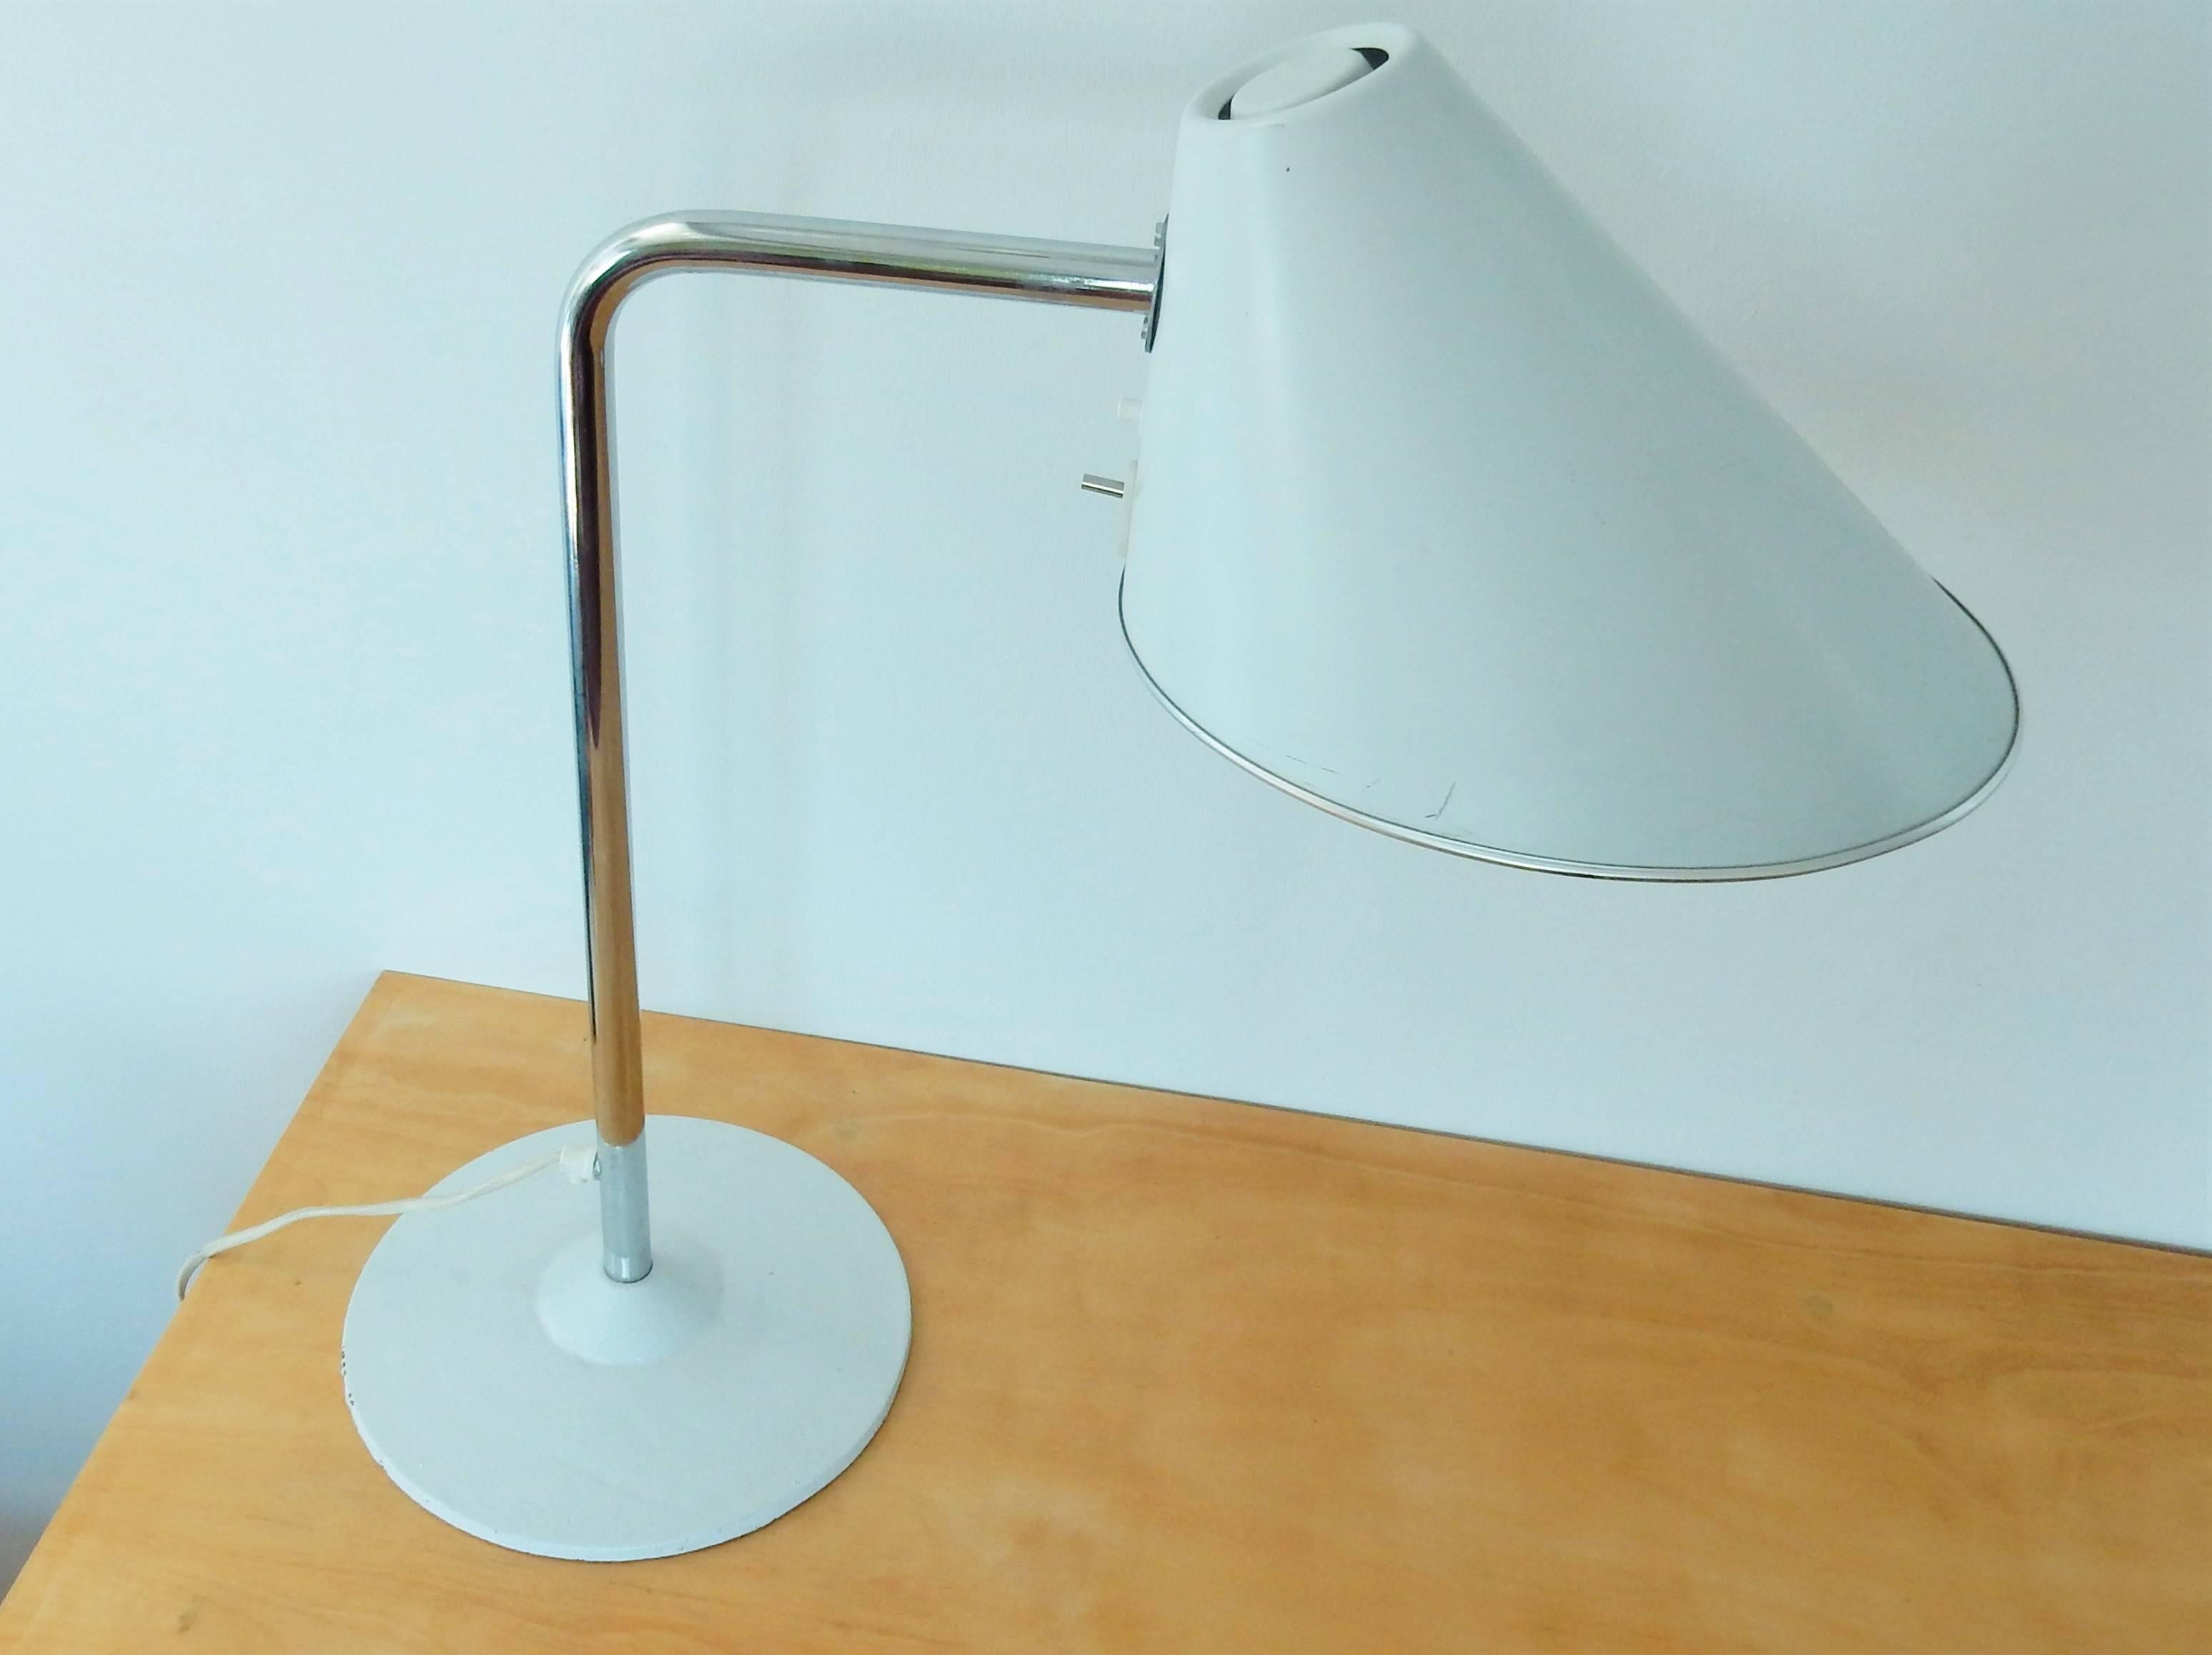 Lampe de bureau suédoise d'un très beau design. La lampe est en très bon état de fonctionnement et s'appelle 